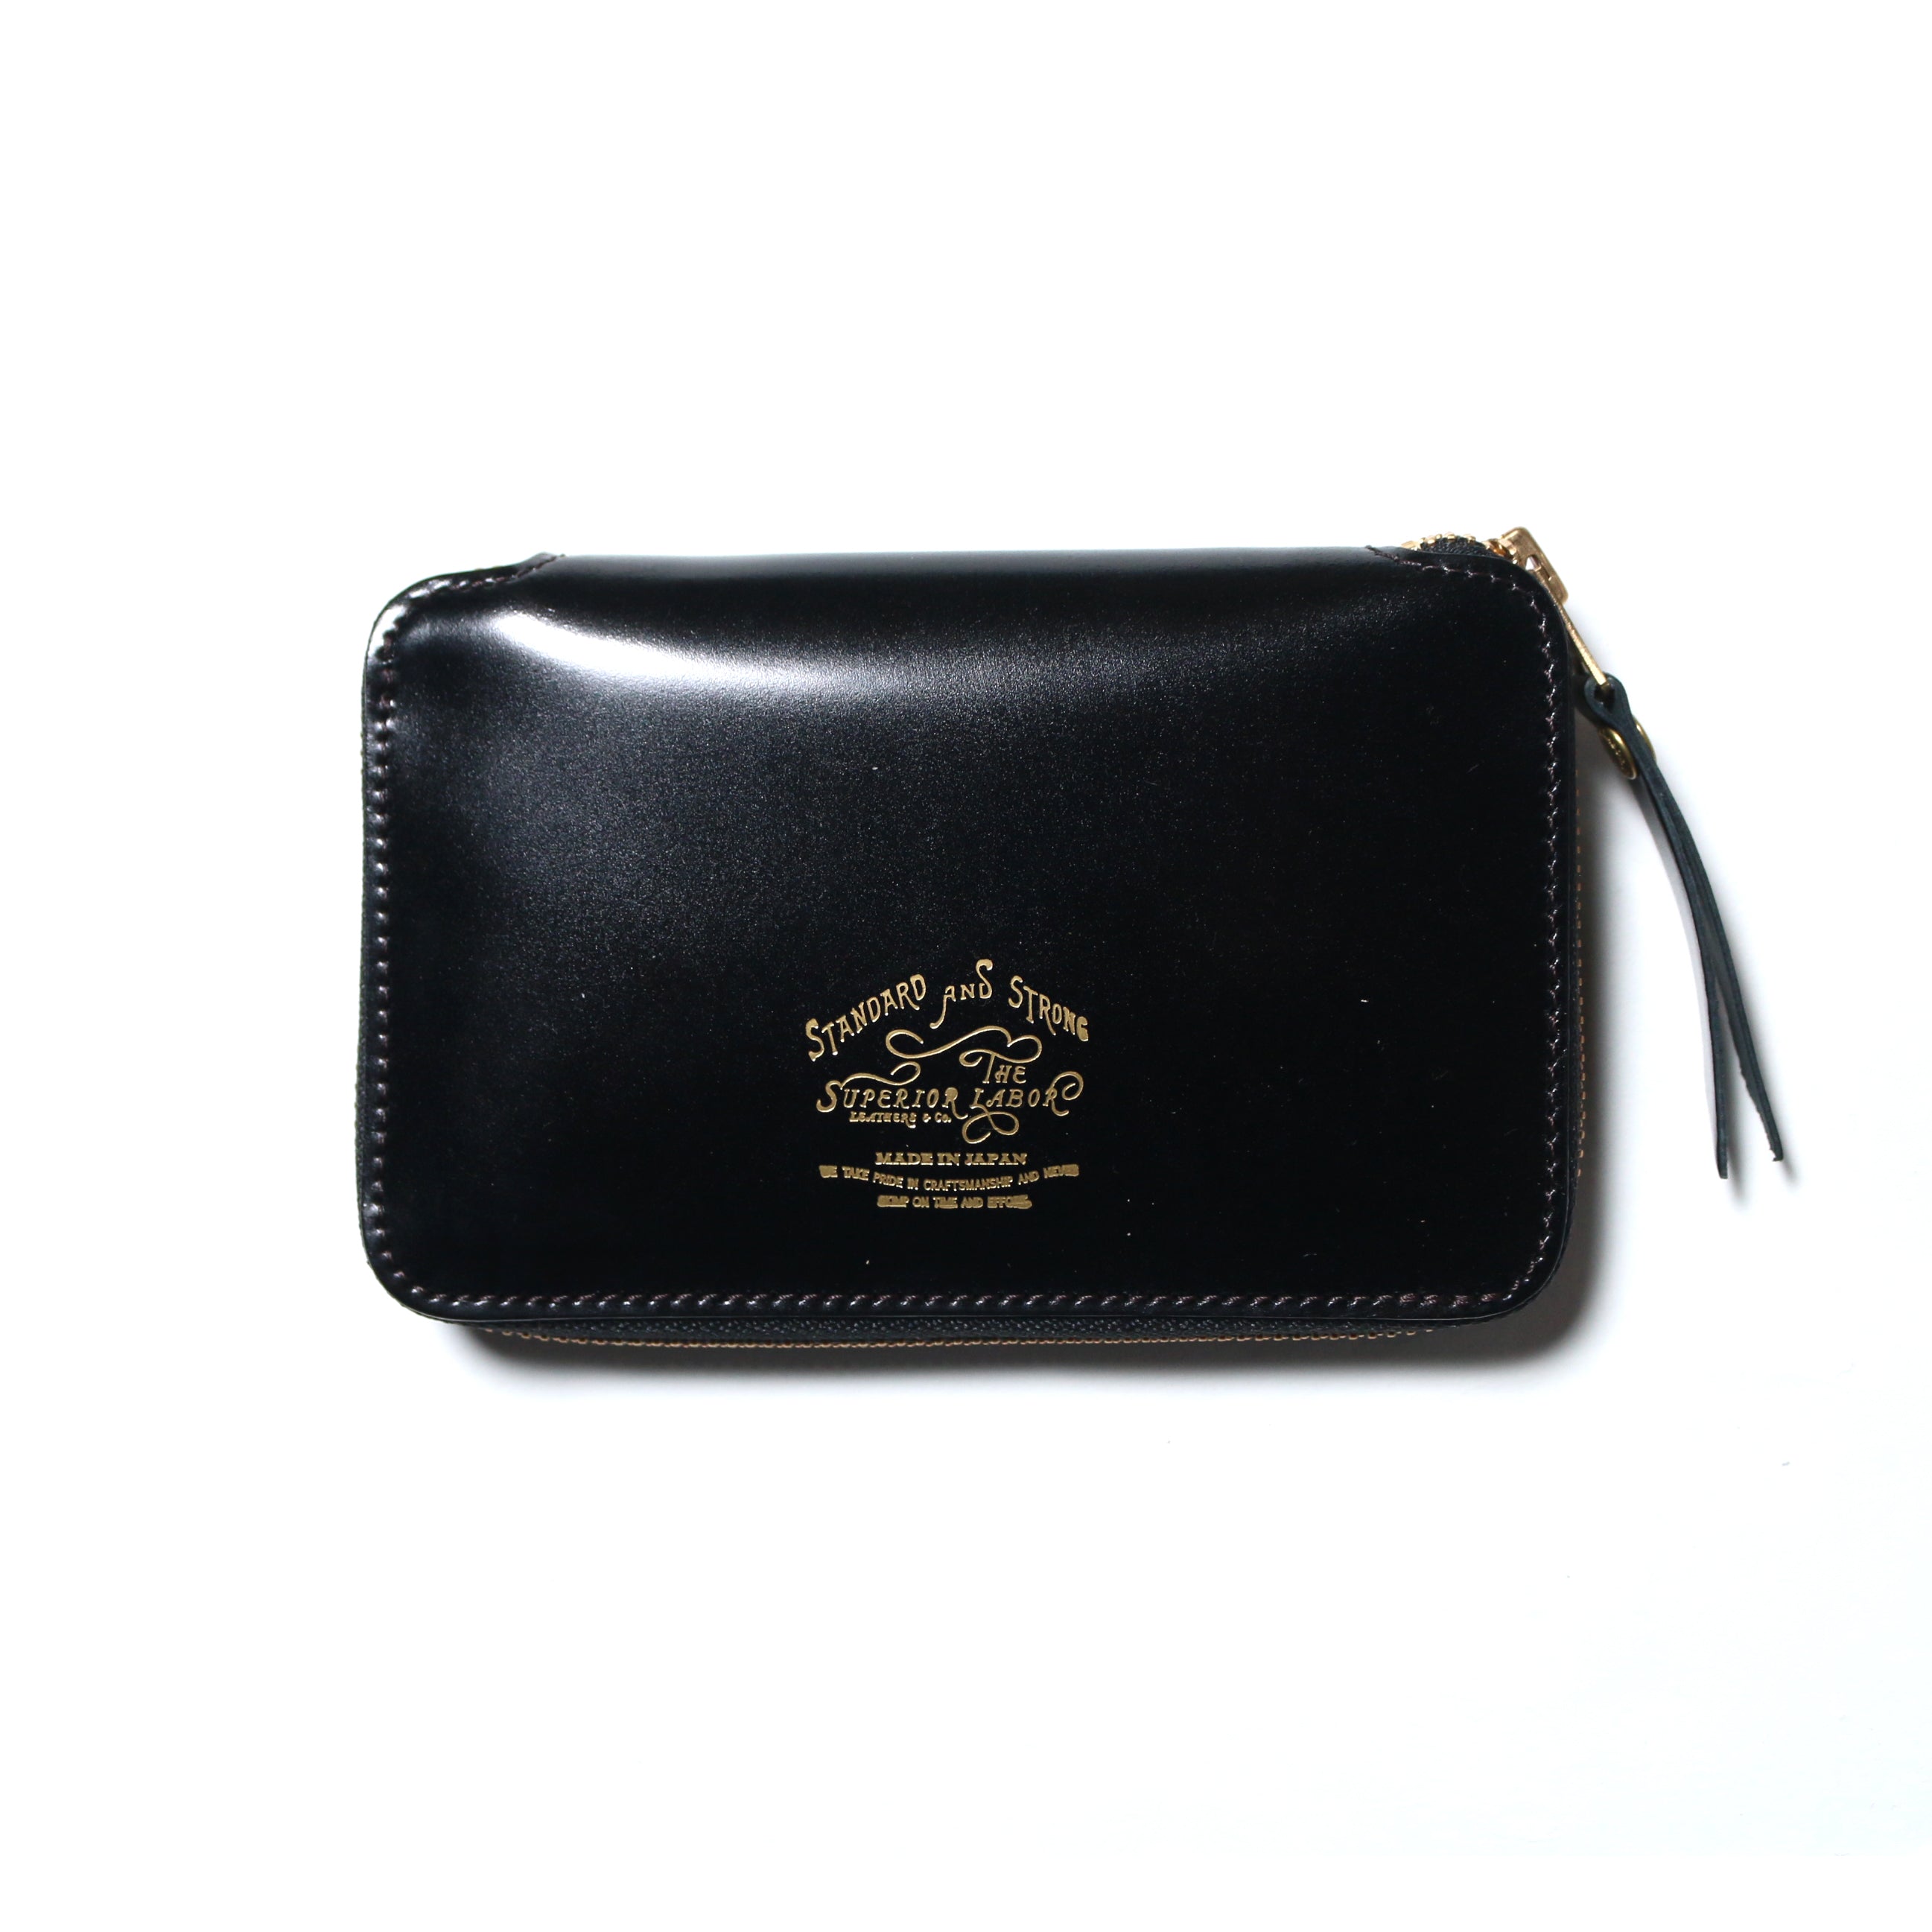 SL0192 cordovan zip middle wallet